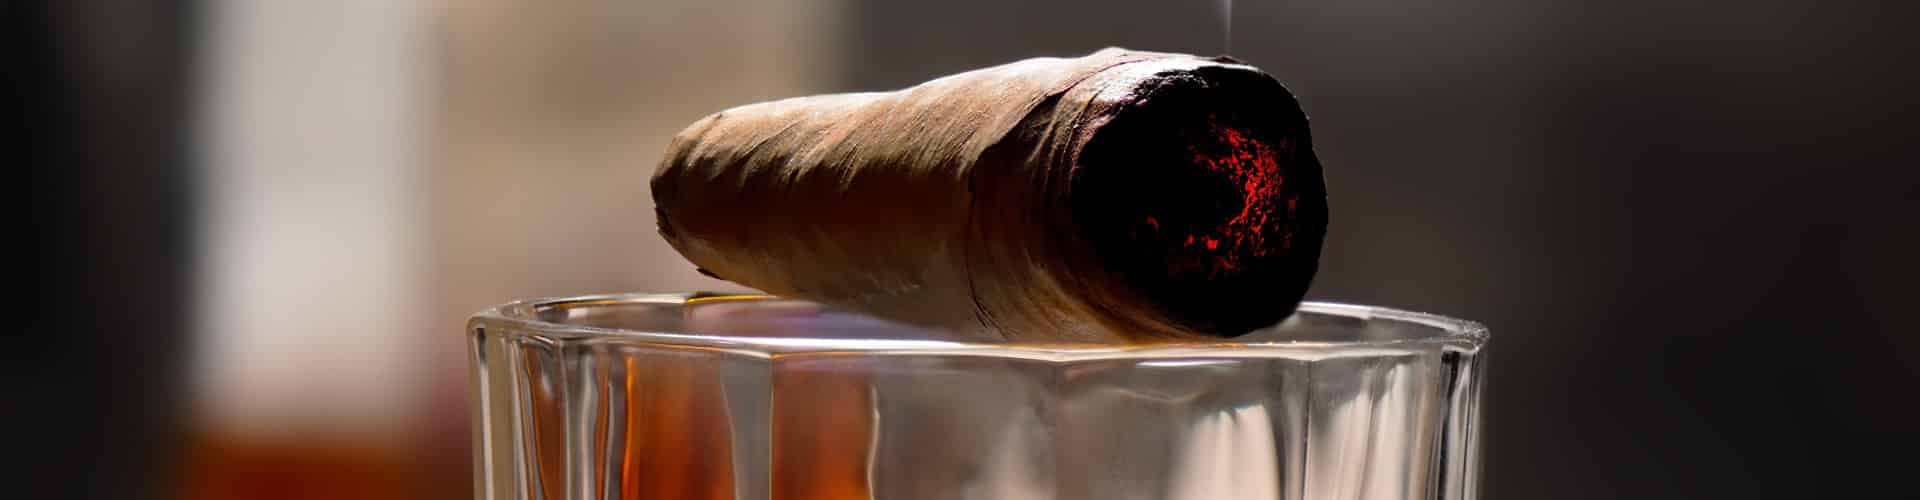 Moleskine Cigar Journal - Sautter of Mount Street